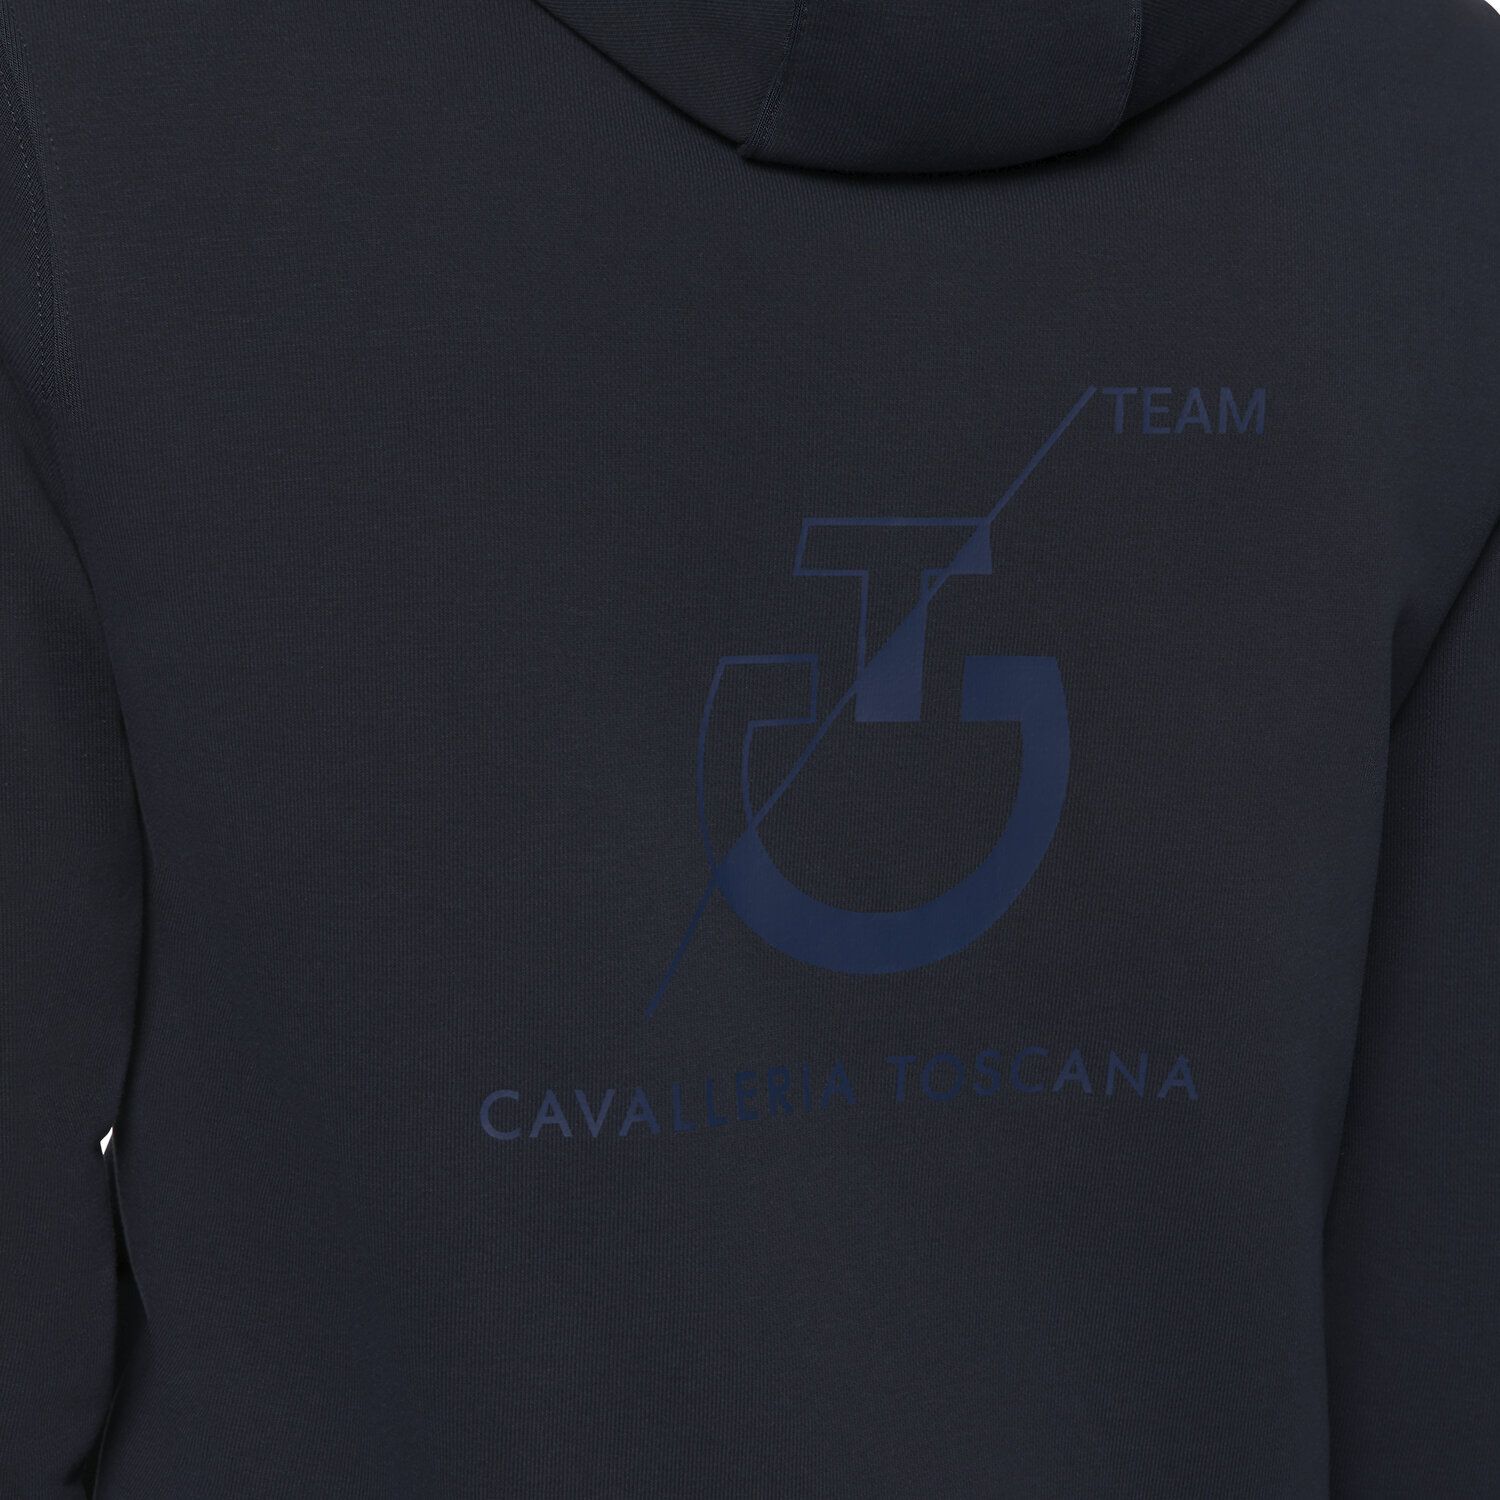 Cavalleria Toscana Women's CT Team zip hooded sweatshirt NAVY-5